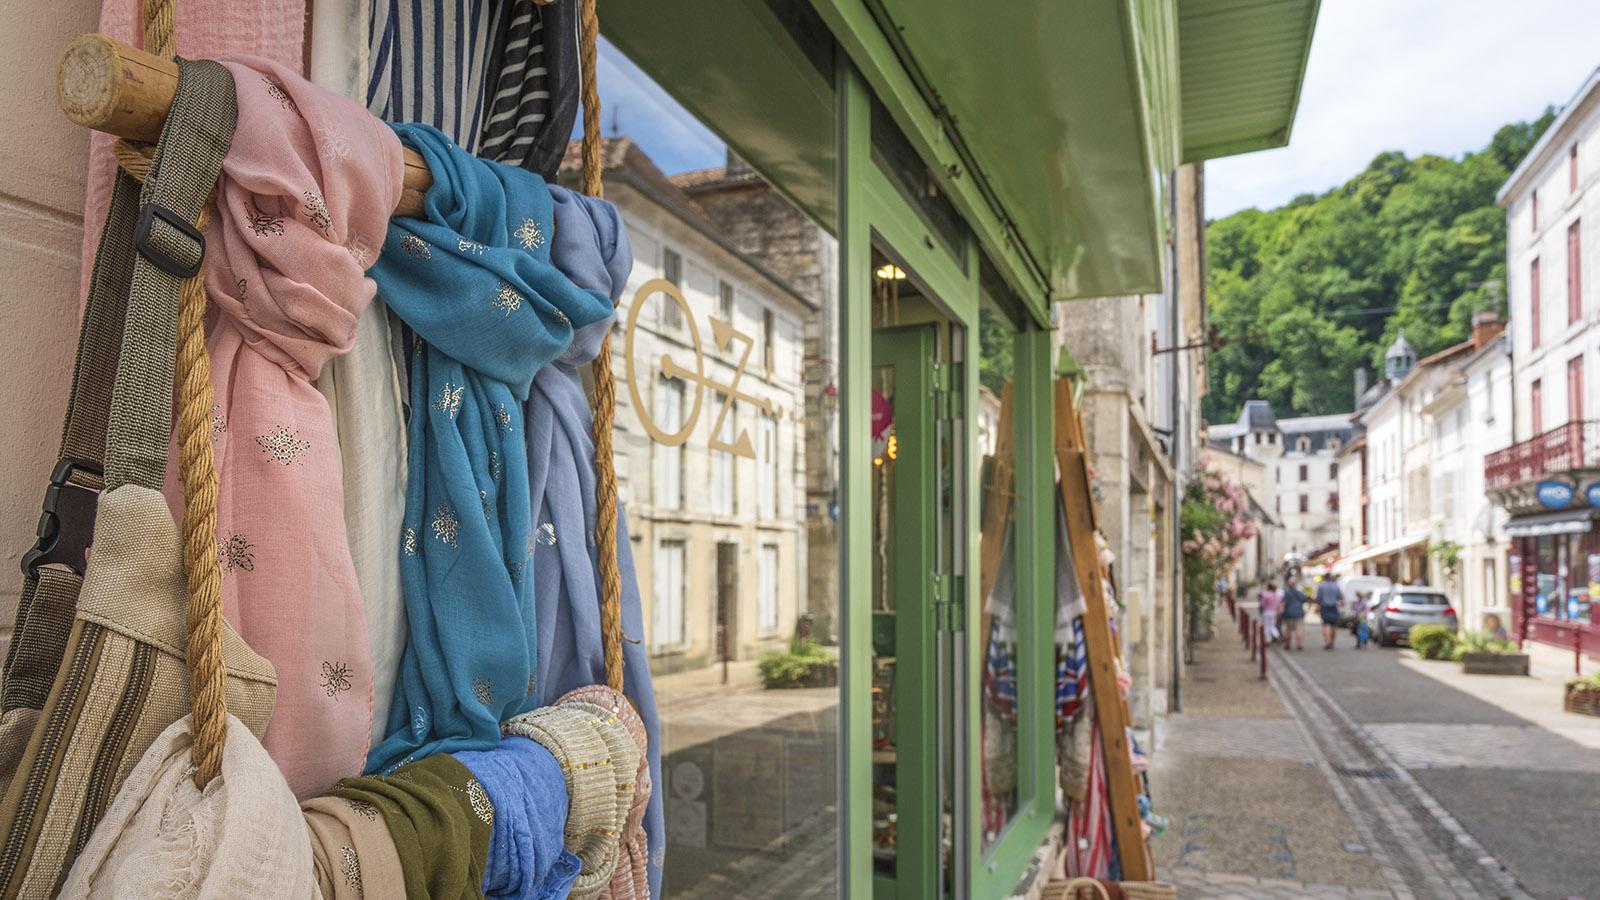 Kleine, inhabergeführte Läden prägen das Einkaufsangebot von Brantôme. Foto: Hilke Maunder